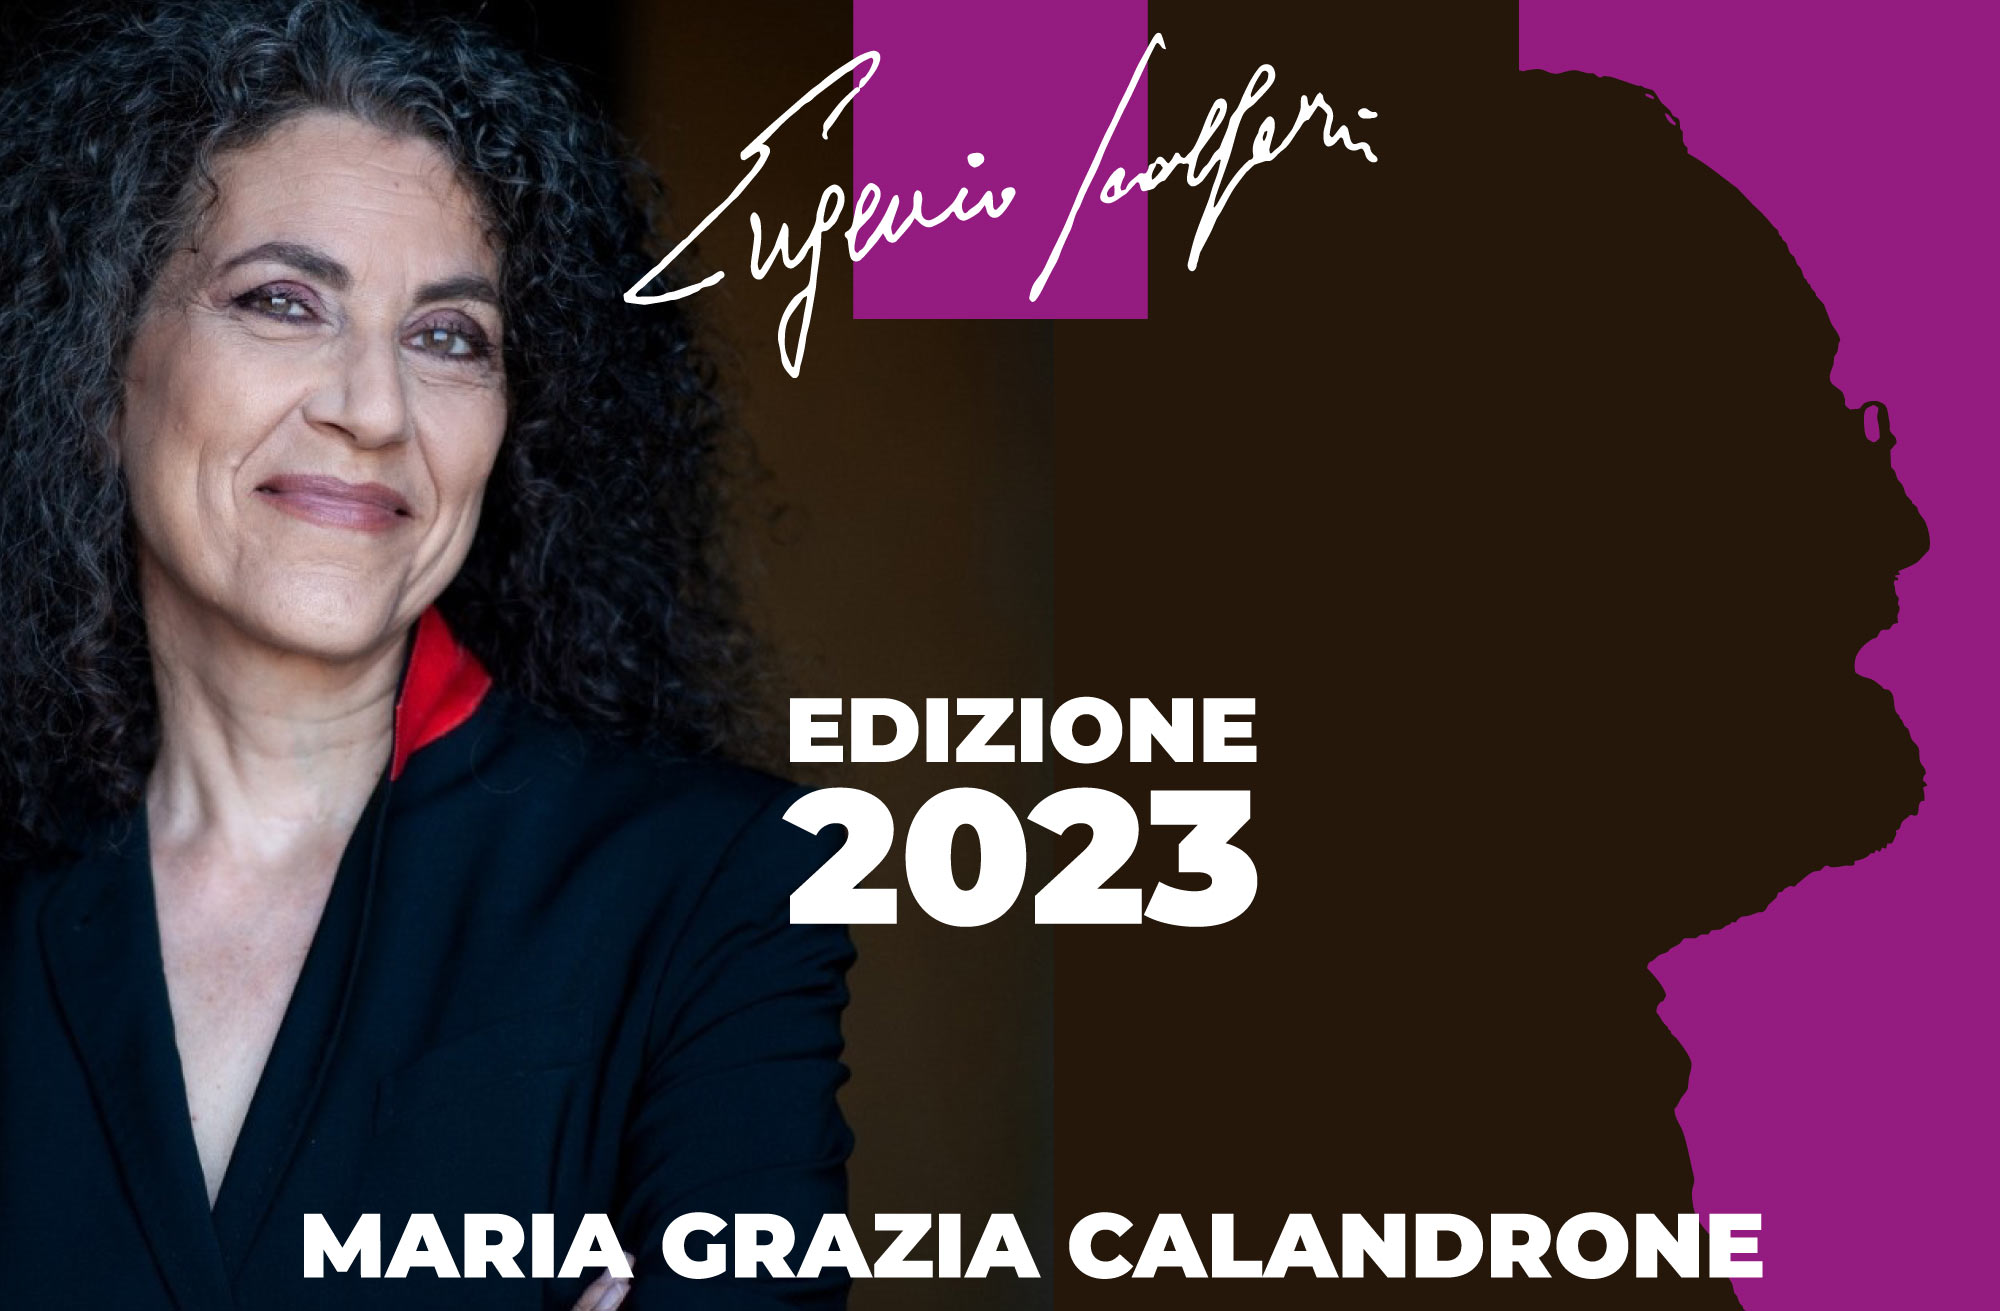 Videomessaggio di Maria Grazia Calandrone per la seconda edizione del Premio Eugenio Scalfari